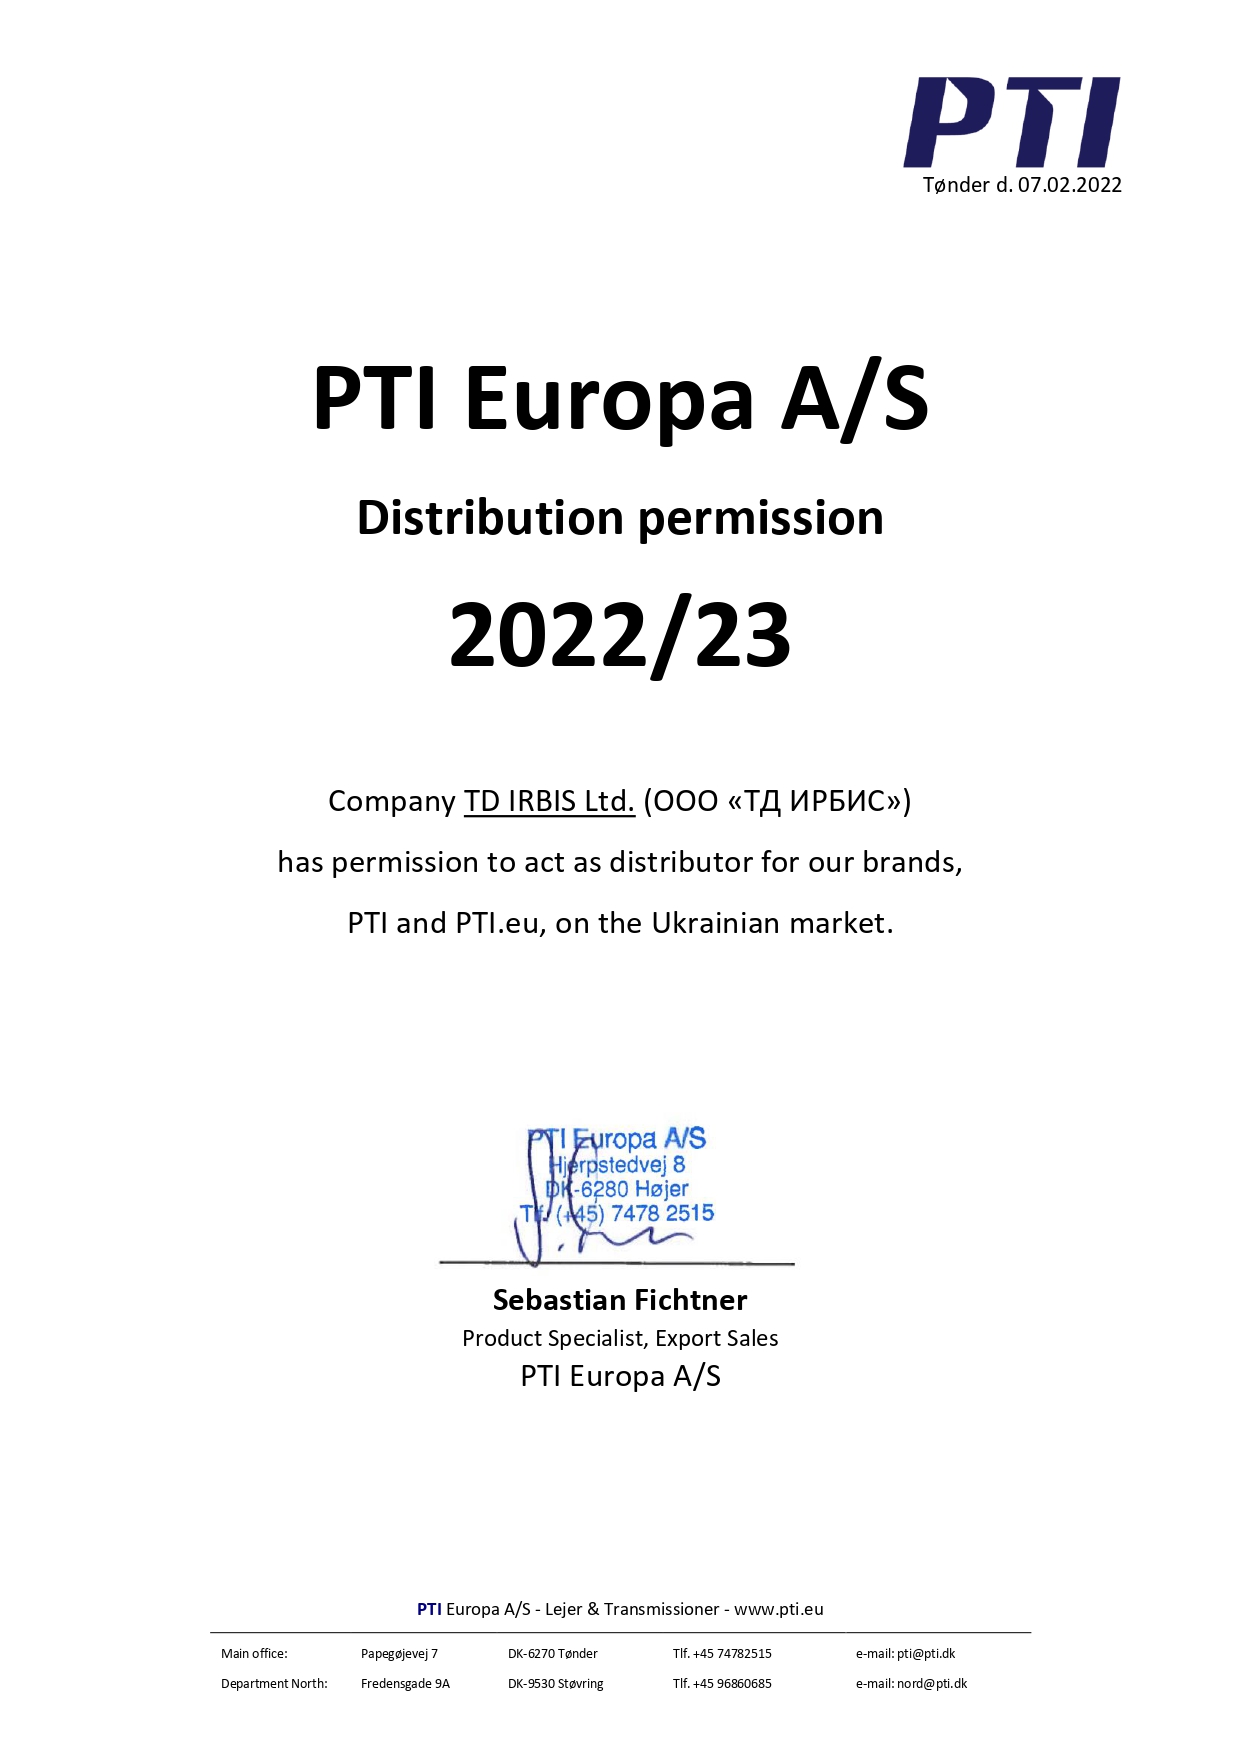 Сертифікат дистрибуції PTI